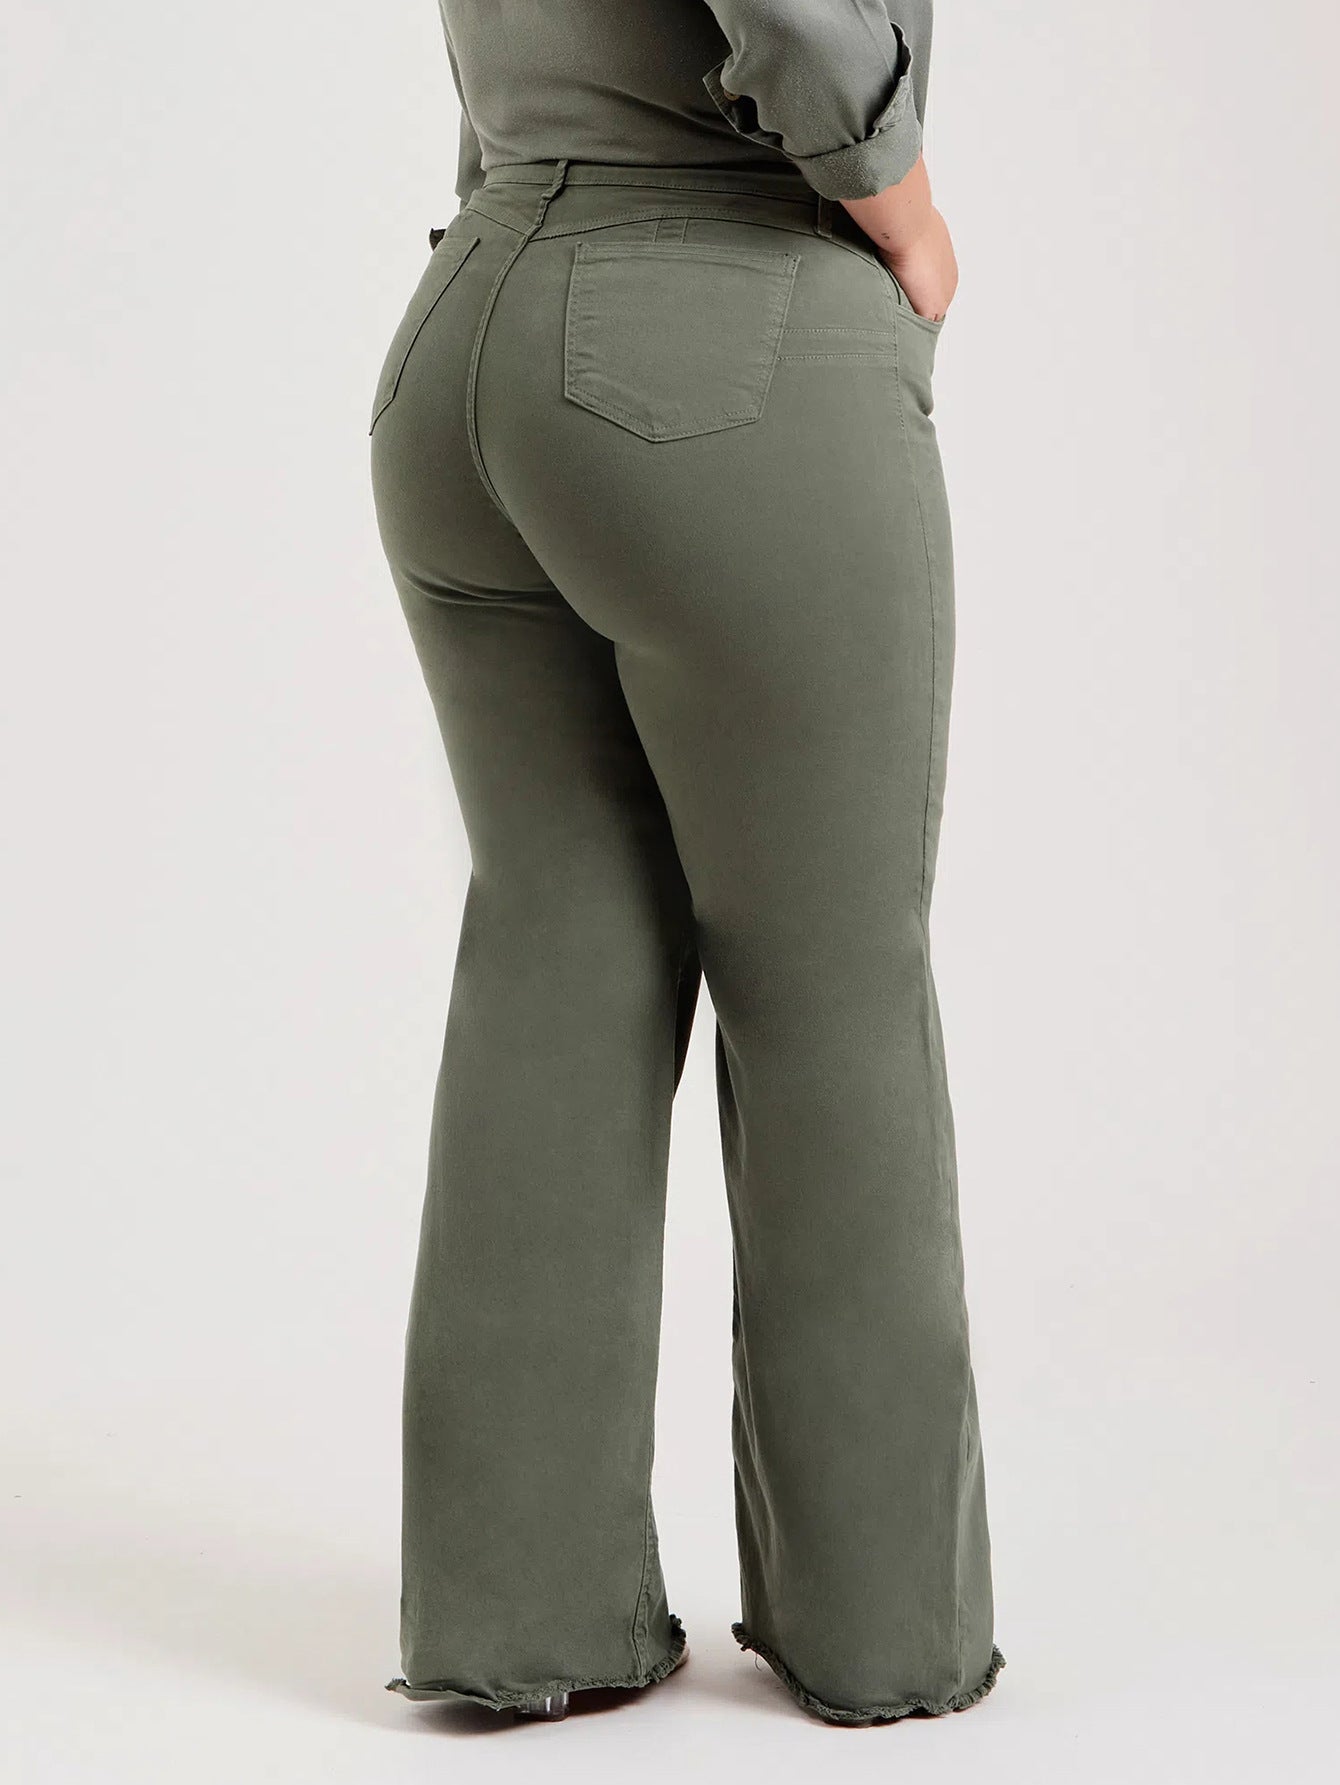 Olivgrüne Damen-Jeans mit ausgefranstem Rand